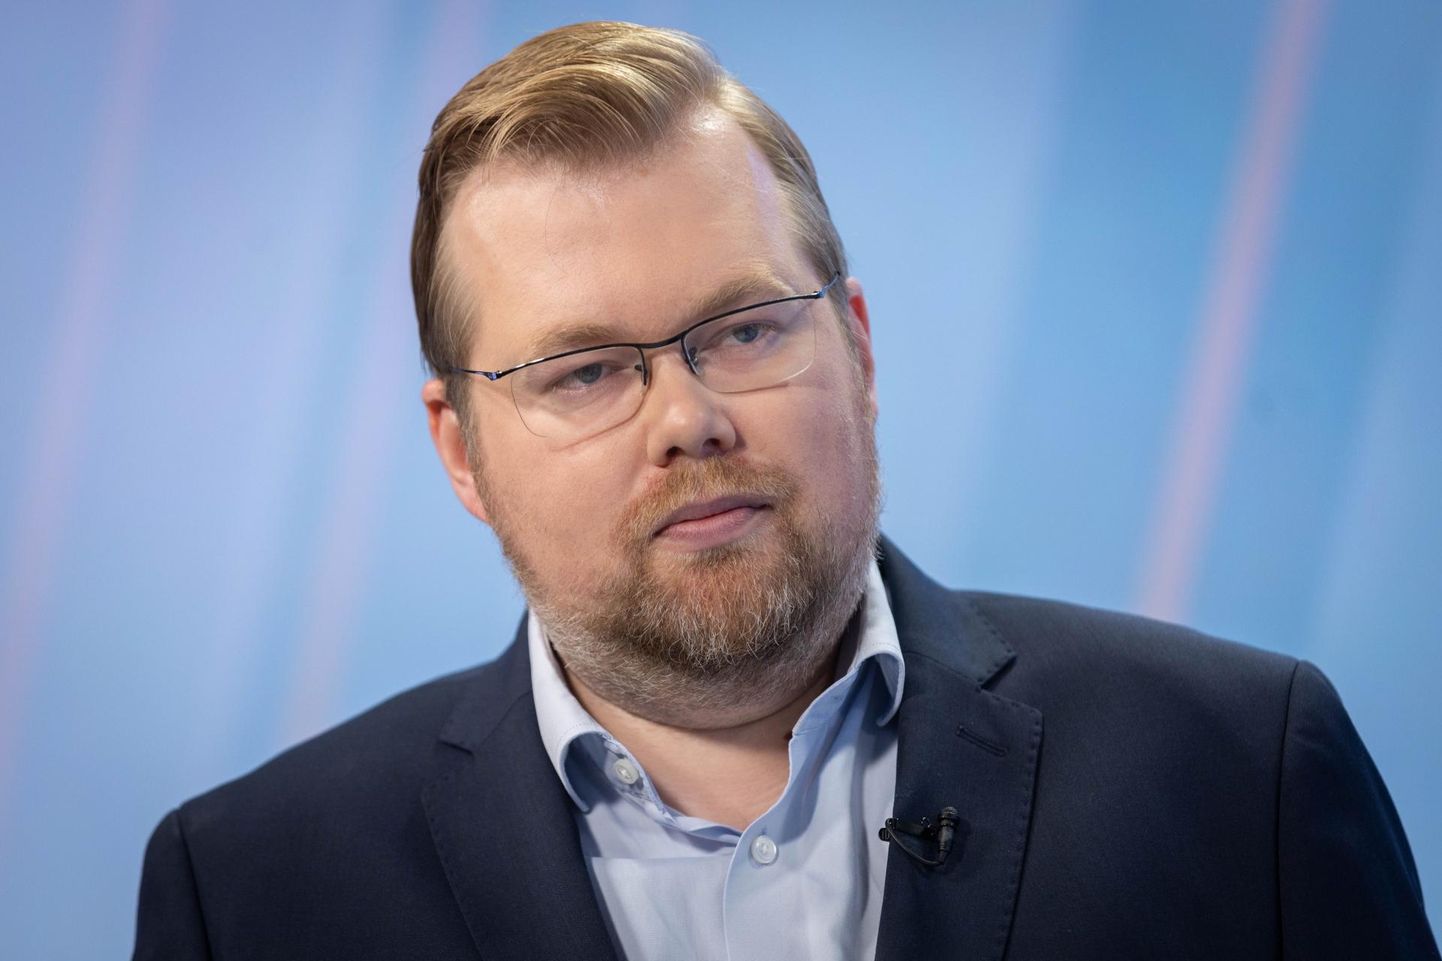 Eesti Panga ökonomist Kaspar Oja näeb kaitsekulu tõusus makromajanduslikku loogikat.